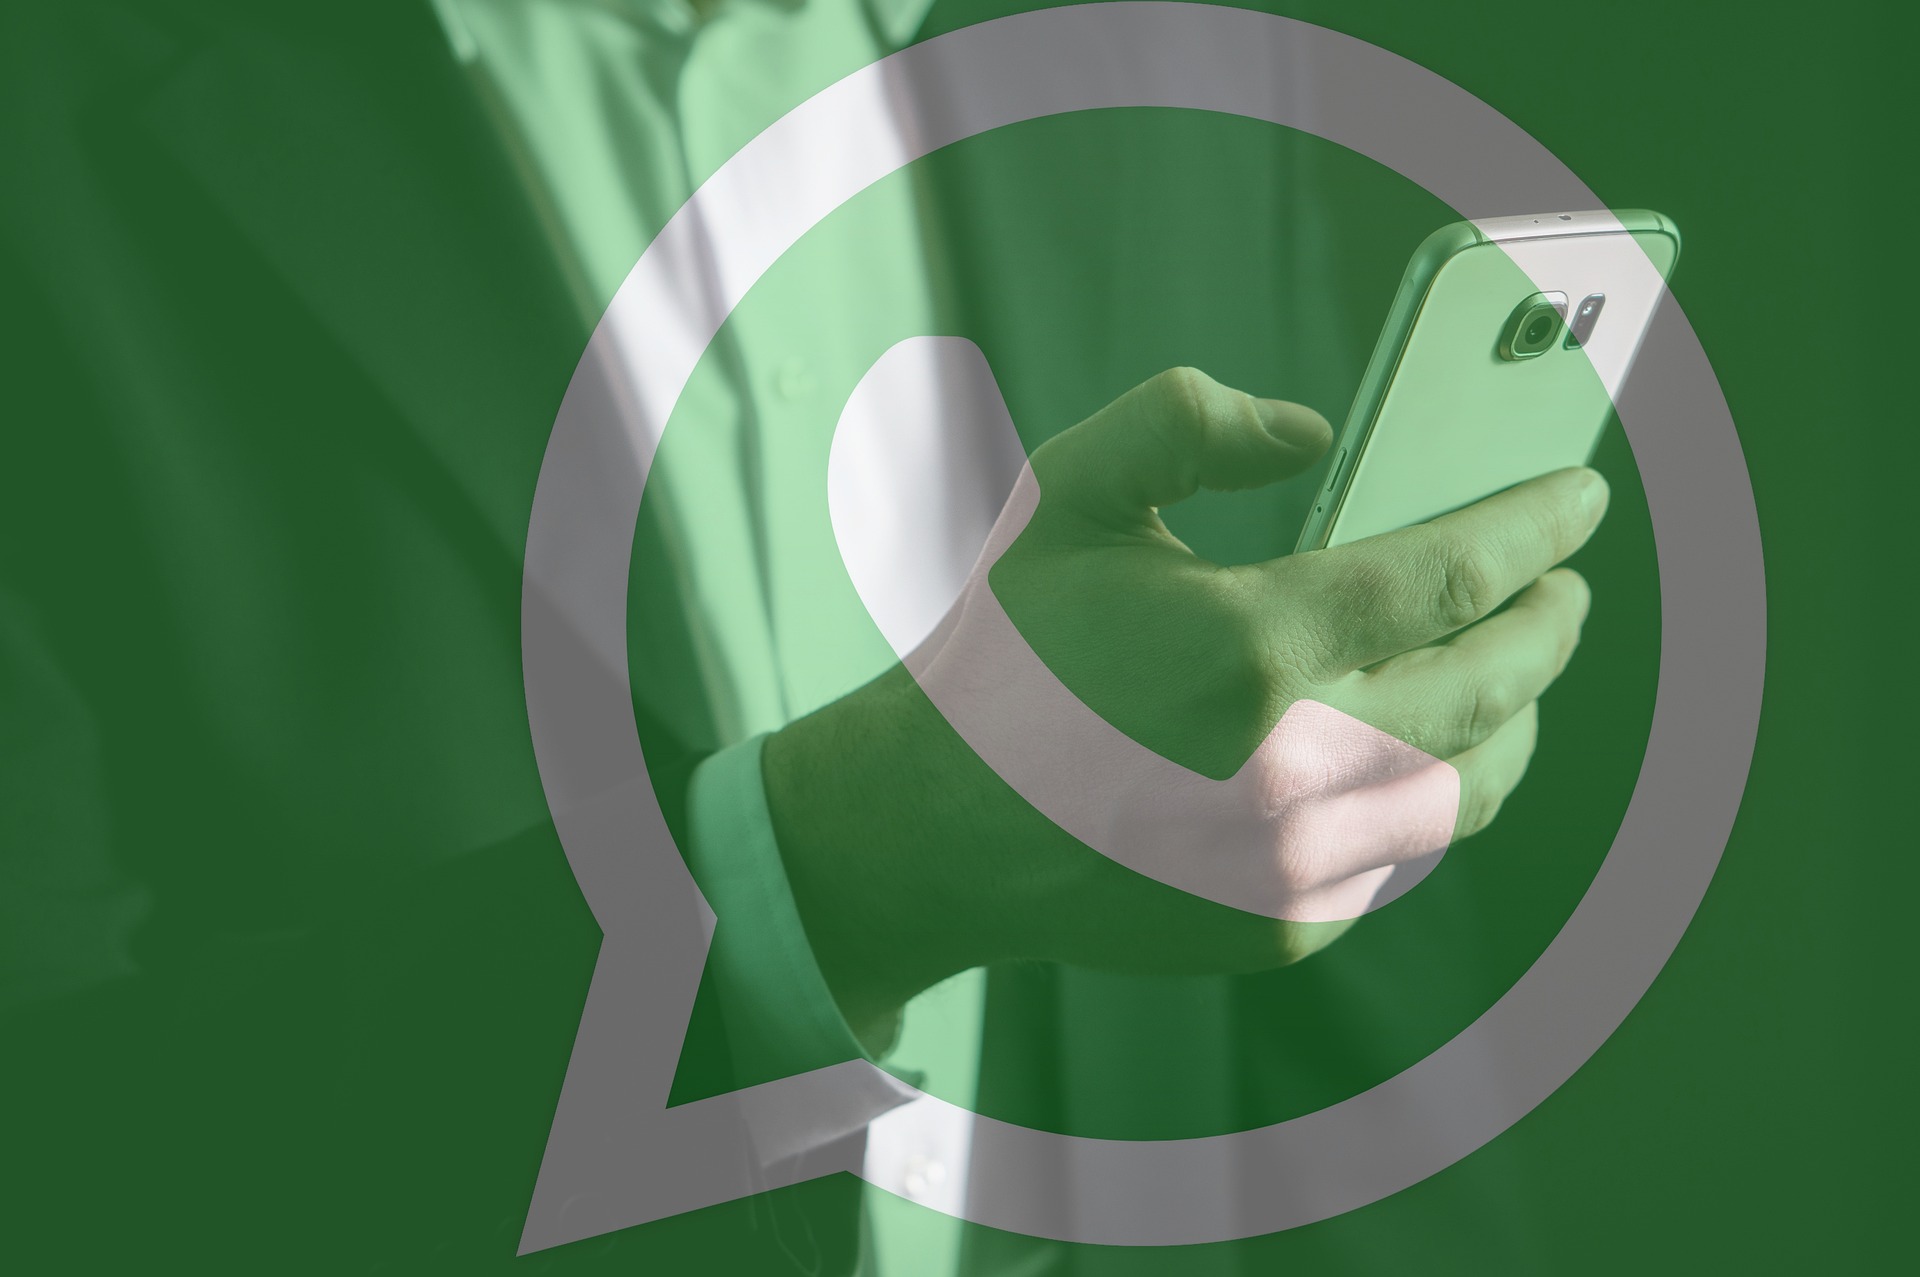 Reacciones de WhatsApp, la nueva función tipo Facebook que ya está disponible en España 2